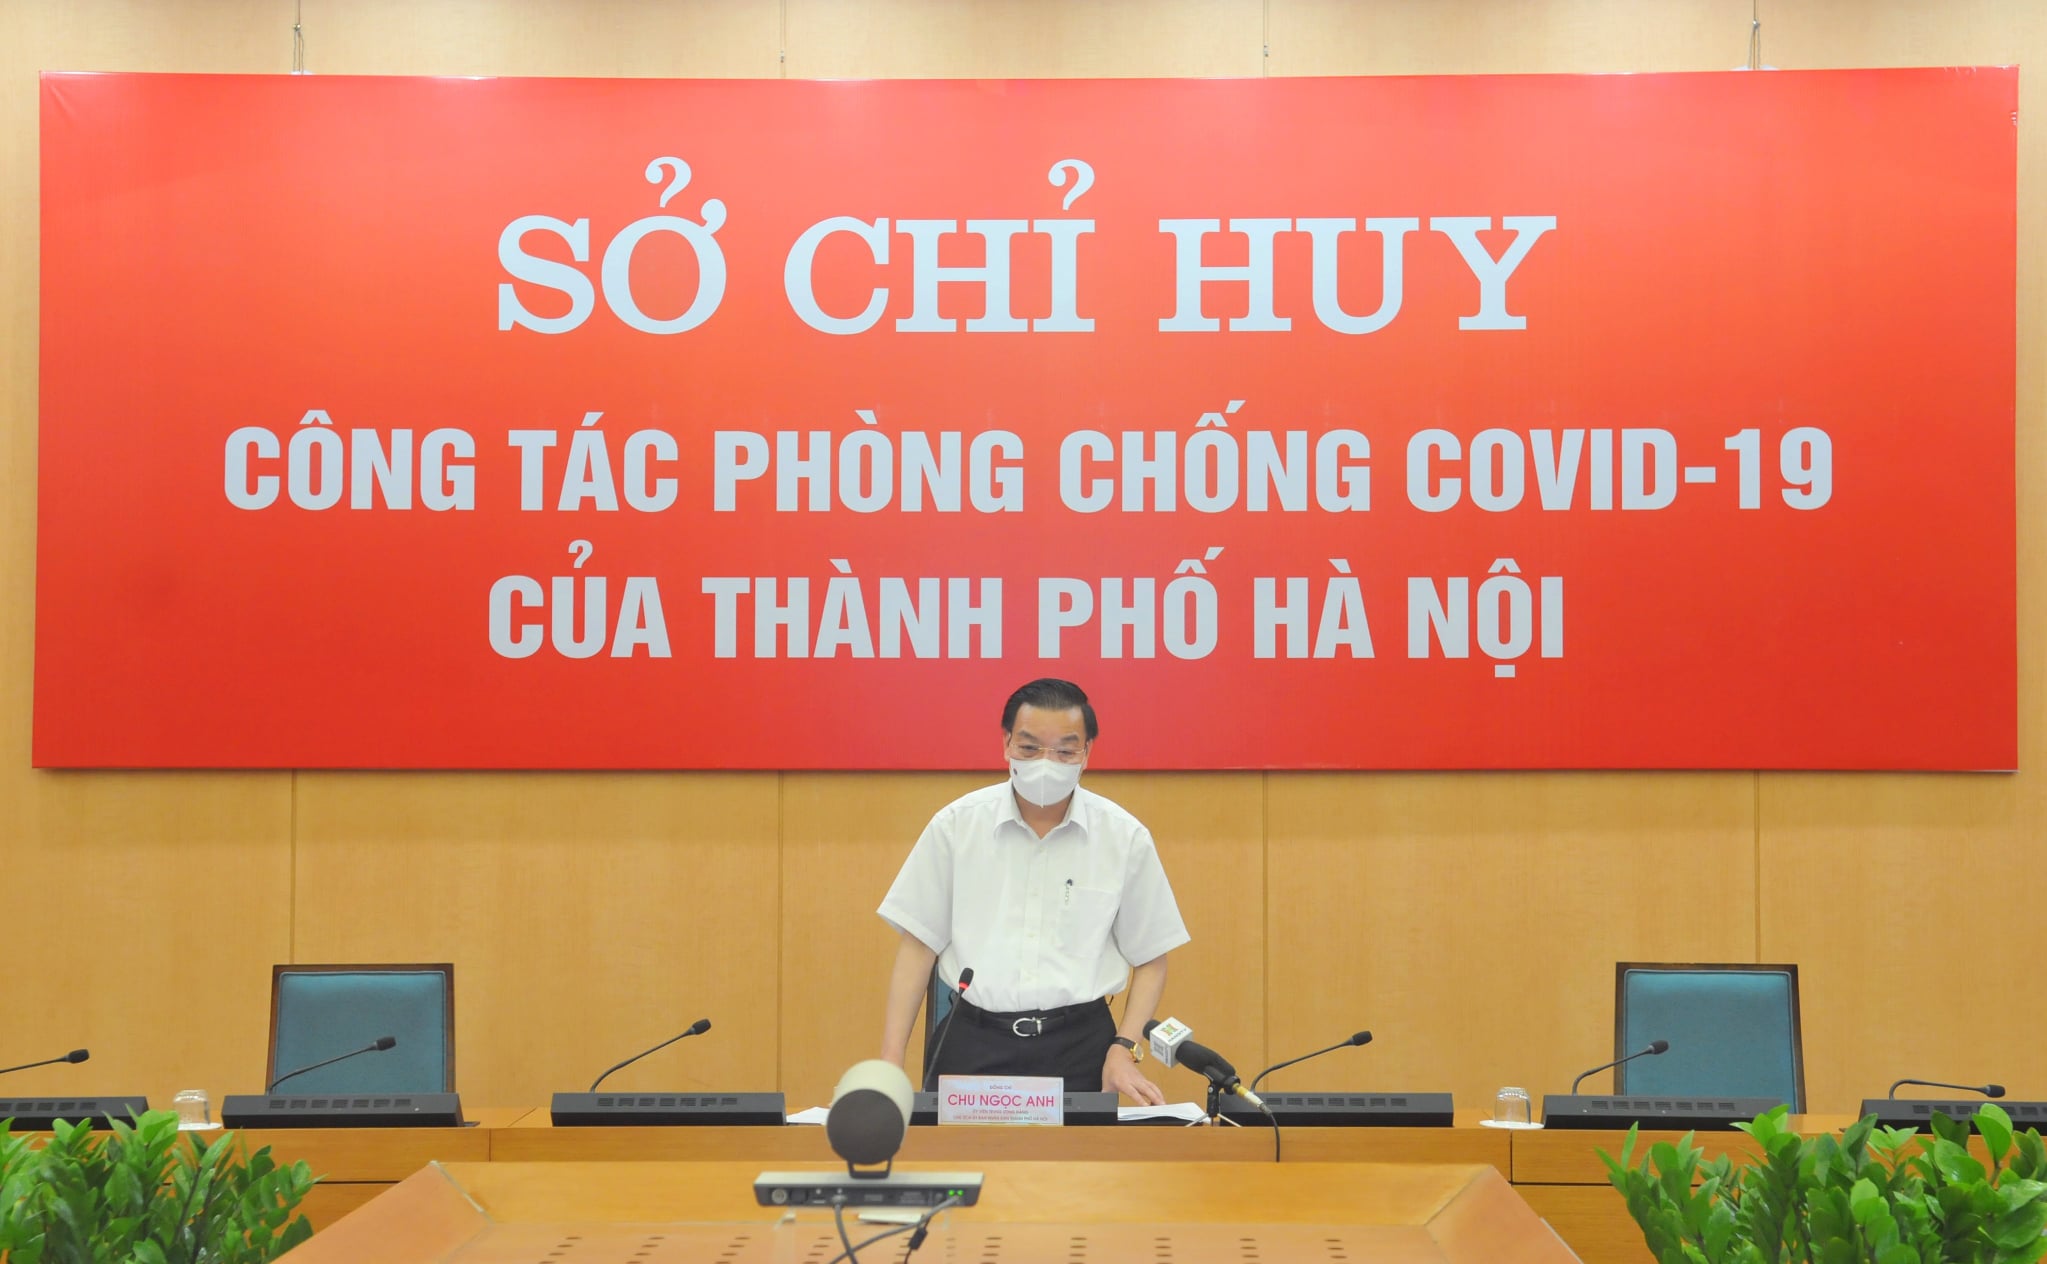 Chủ tịch UBND TP.Hà Nội Chu Ngọc Anh.